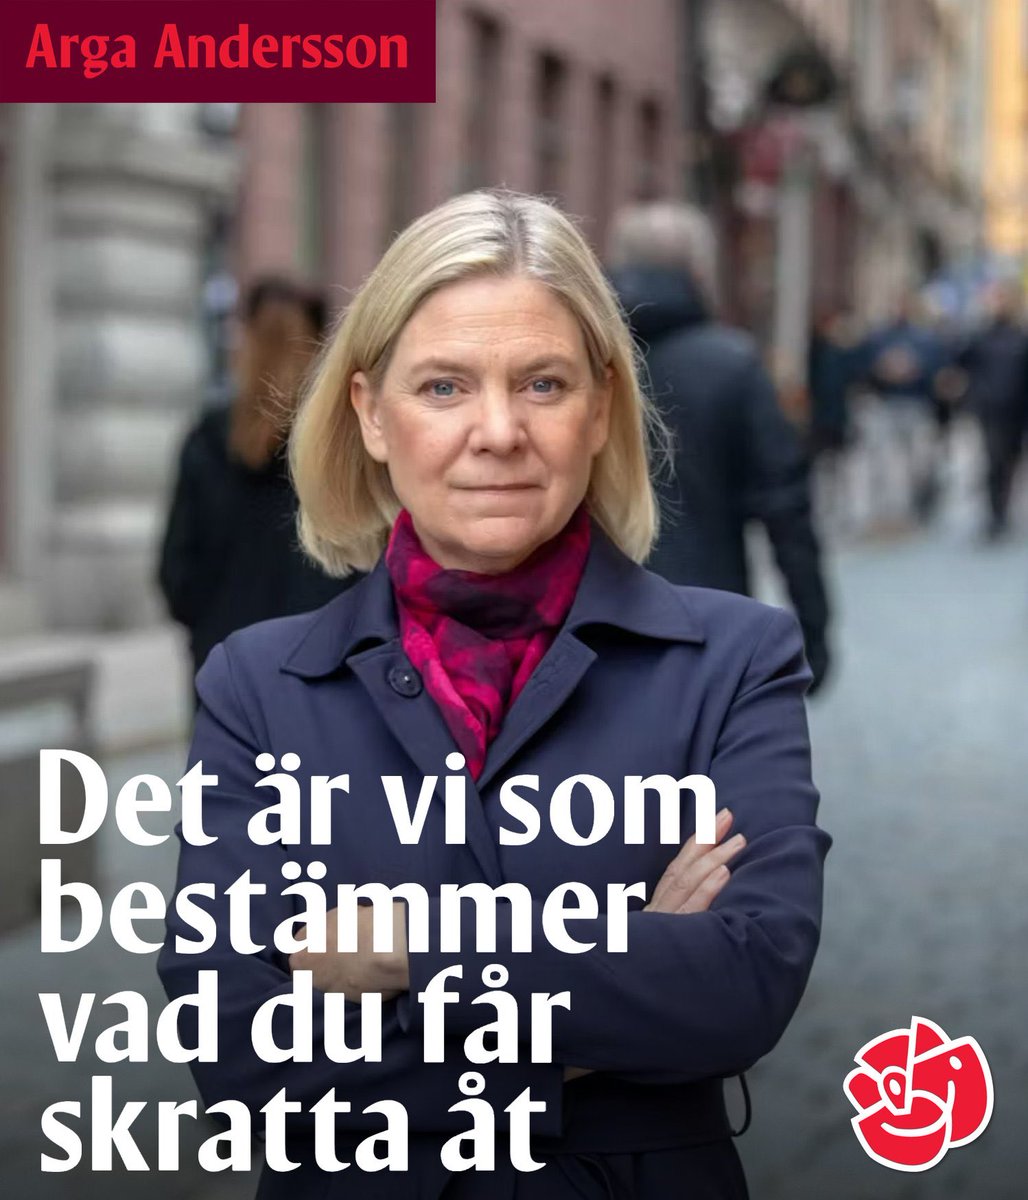 Nu röstar vi SD i #euval 😎

Så skrattar vi åt Arga Andersson och sossarna sen 😂

.